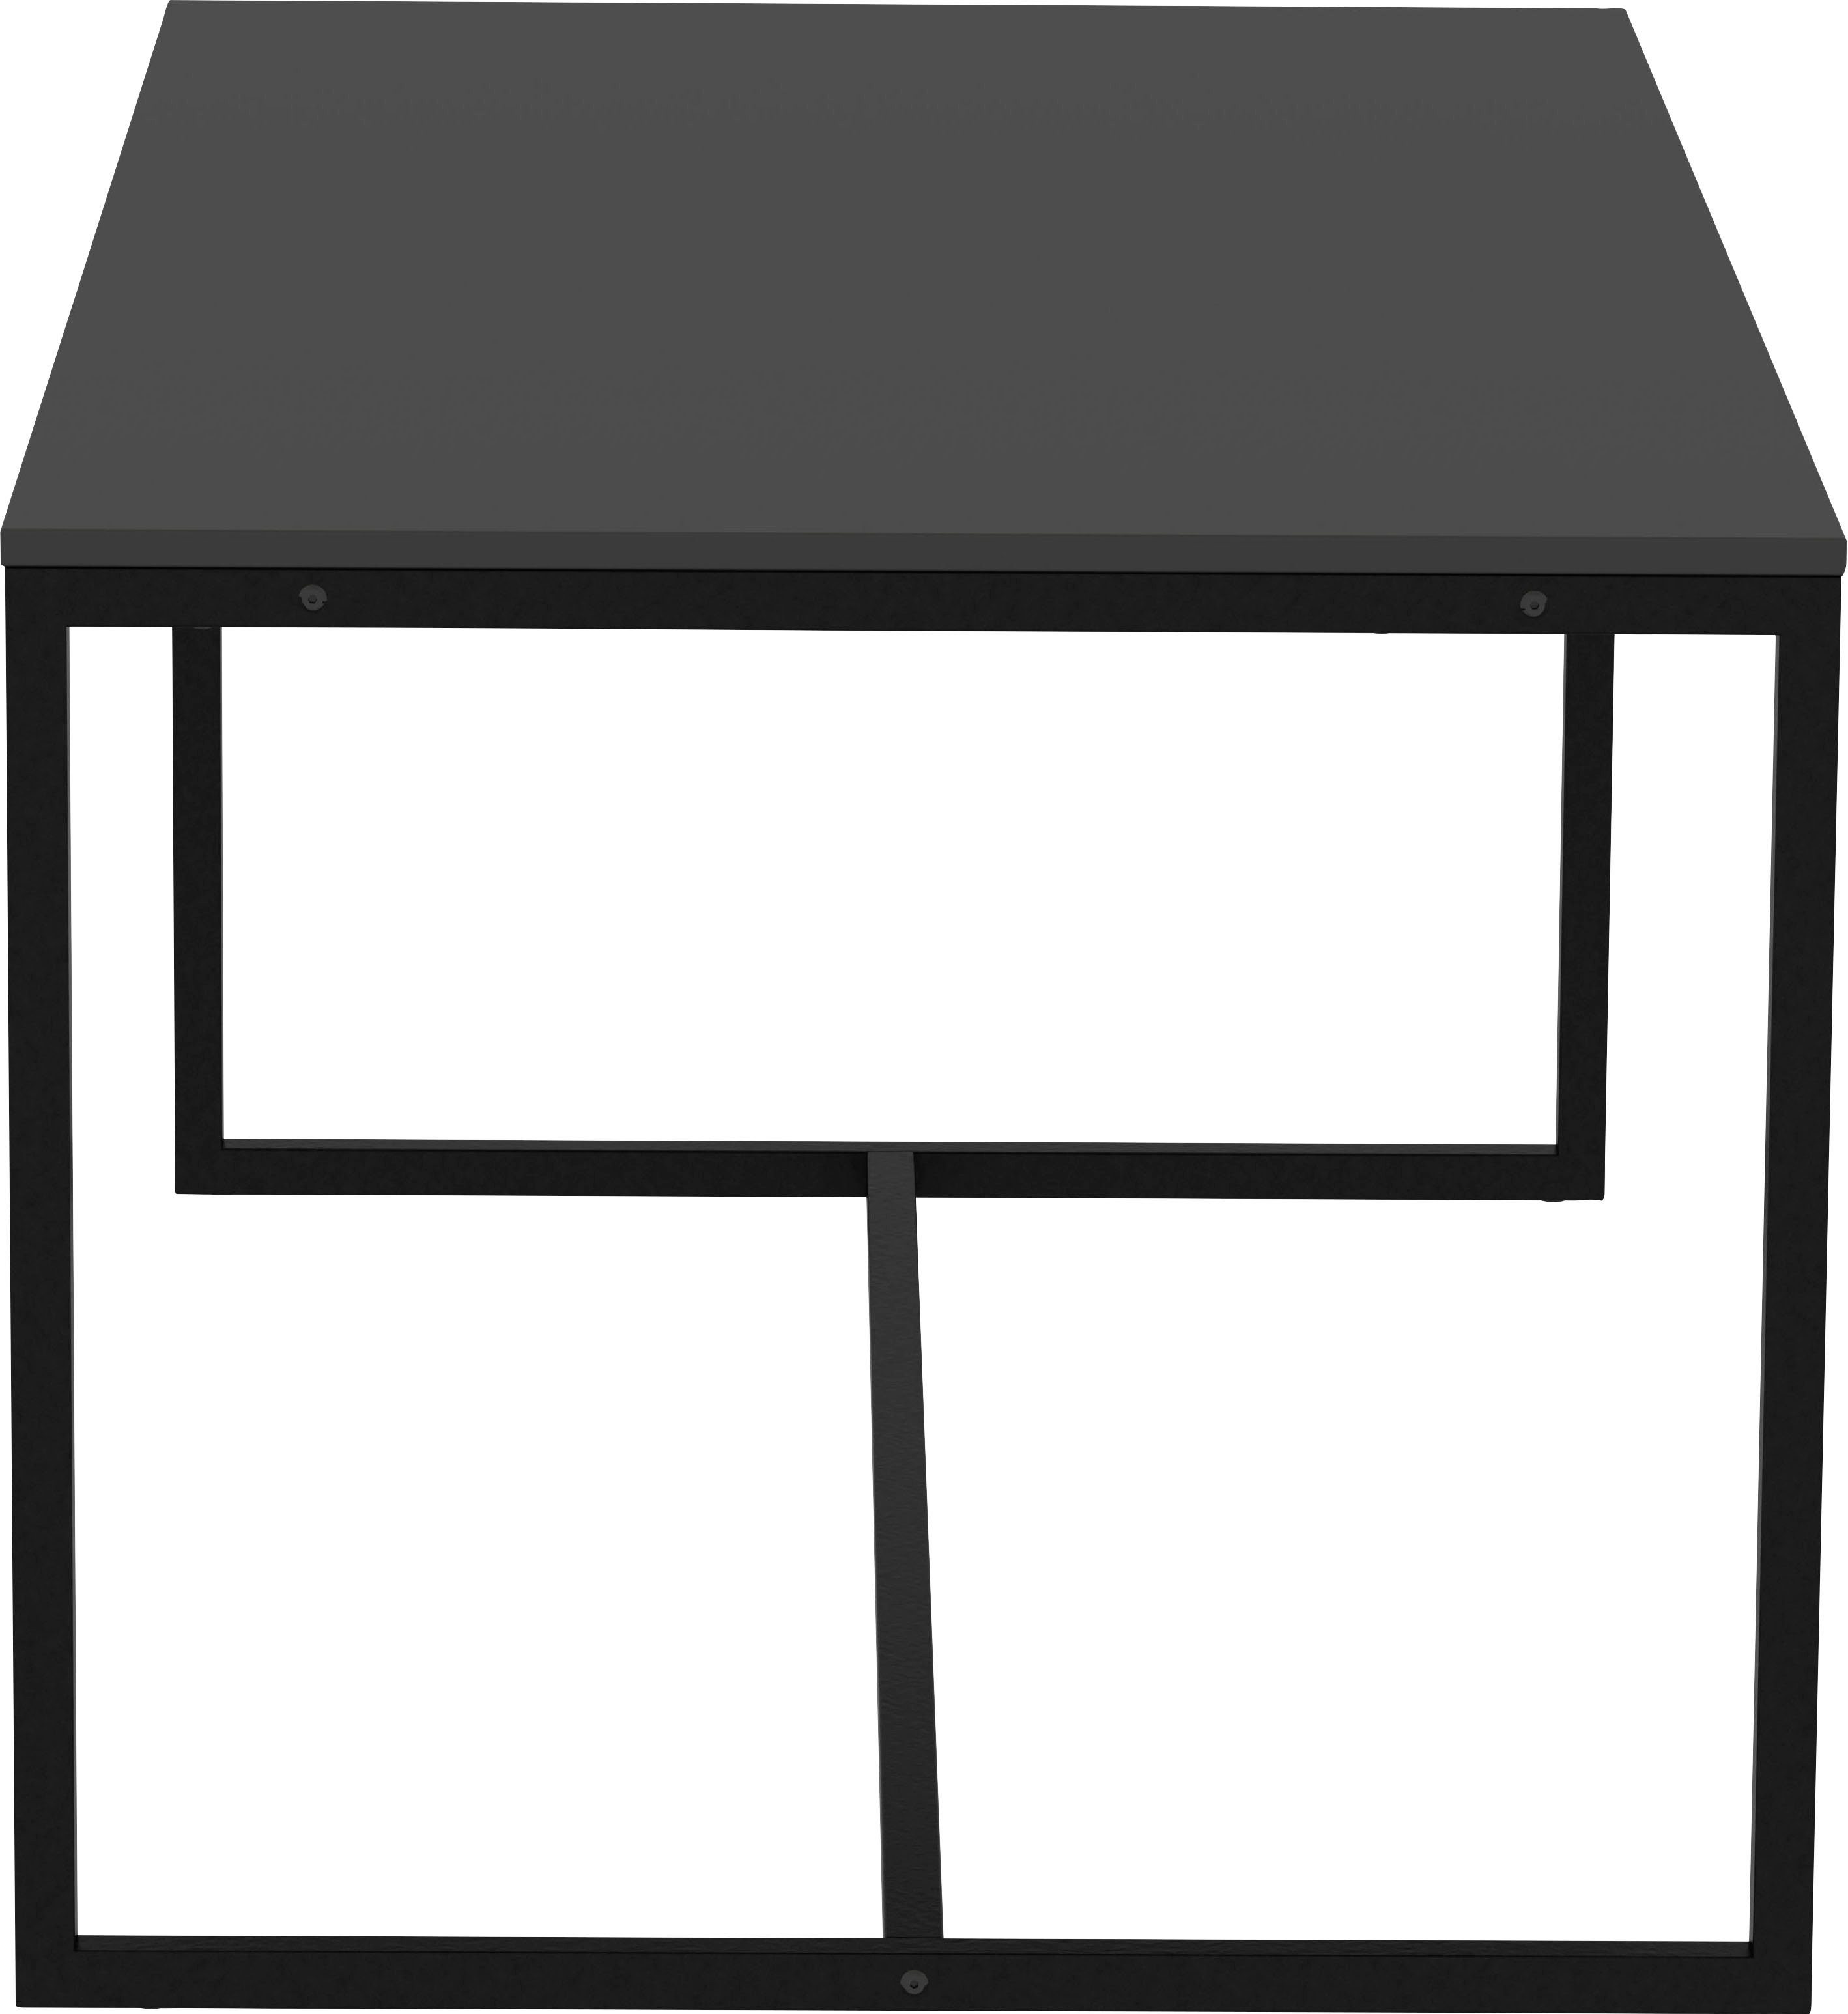 Tenzo Esstisch | cm von 180 LIPP, Design shadow shadow Tenzo Design Breite schwarz studio, schwarz